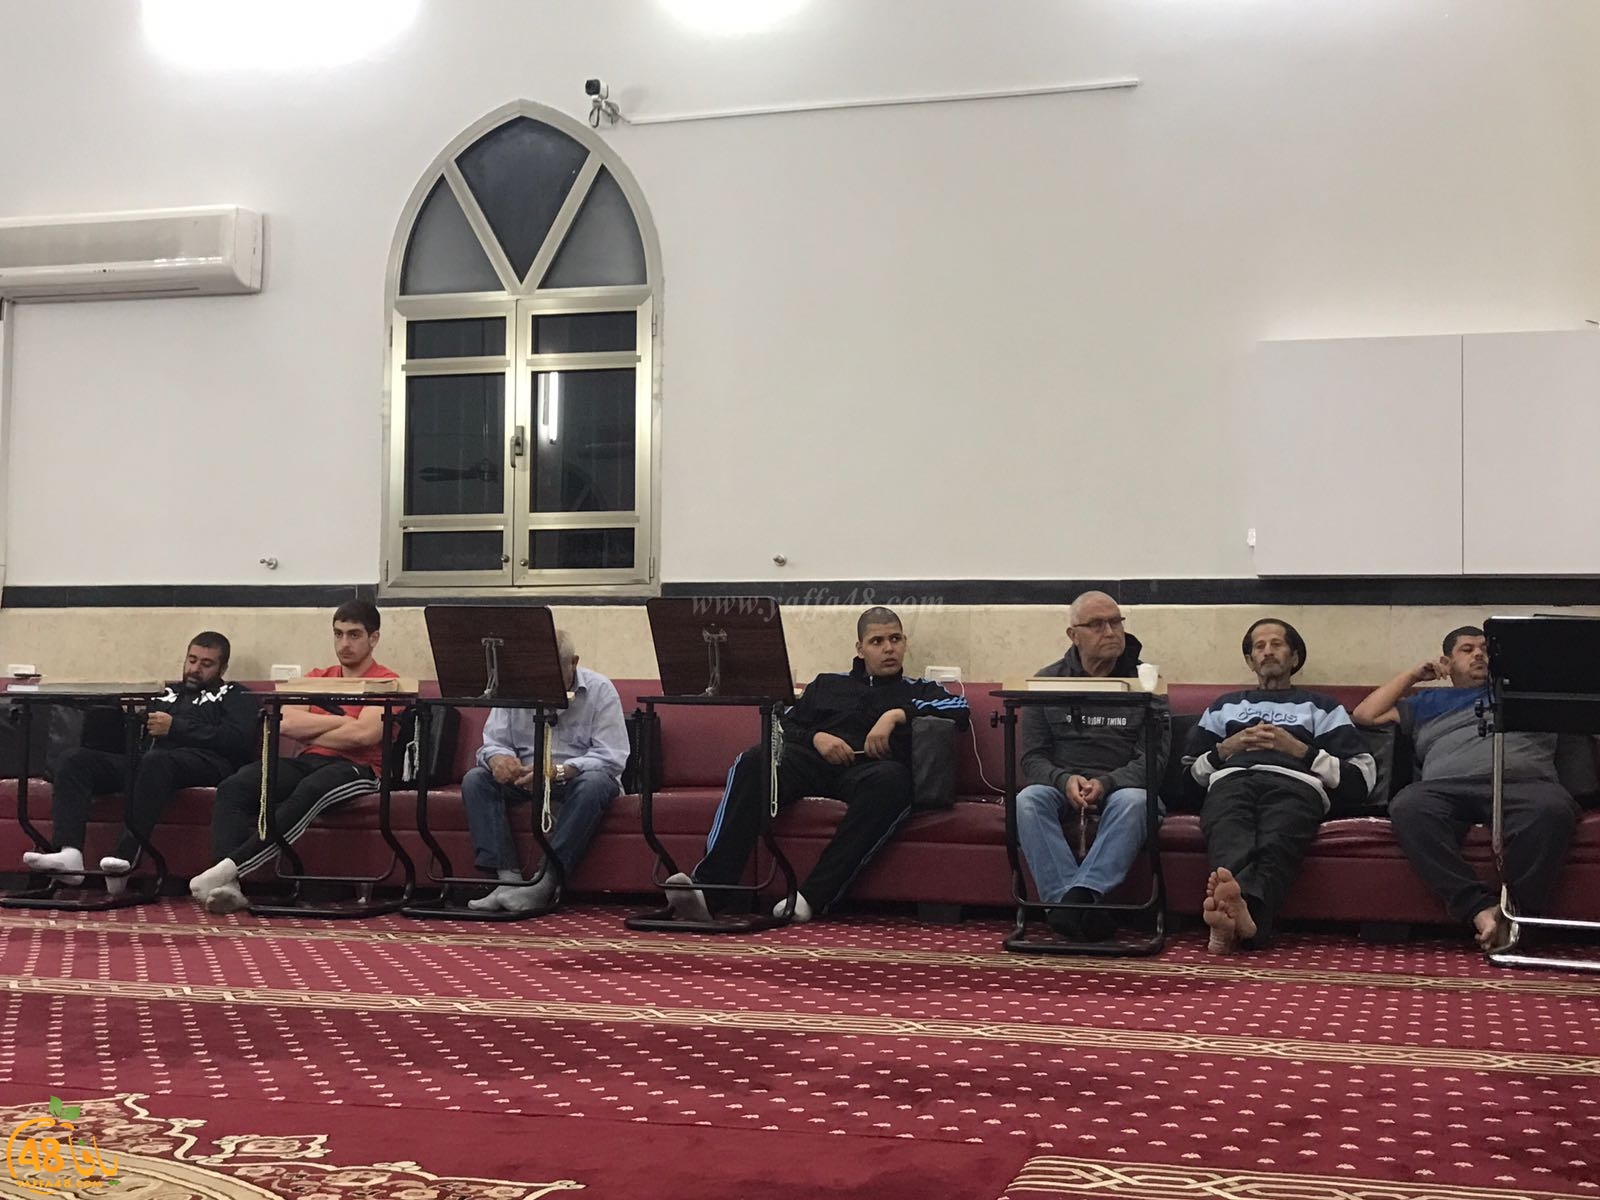  بالصور: الدرس الايماني الاسبوعي للشيخ أحمد سطل في مسجد الجبلية 